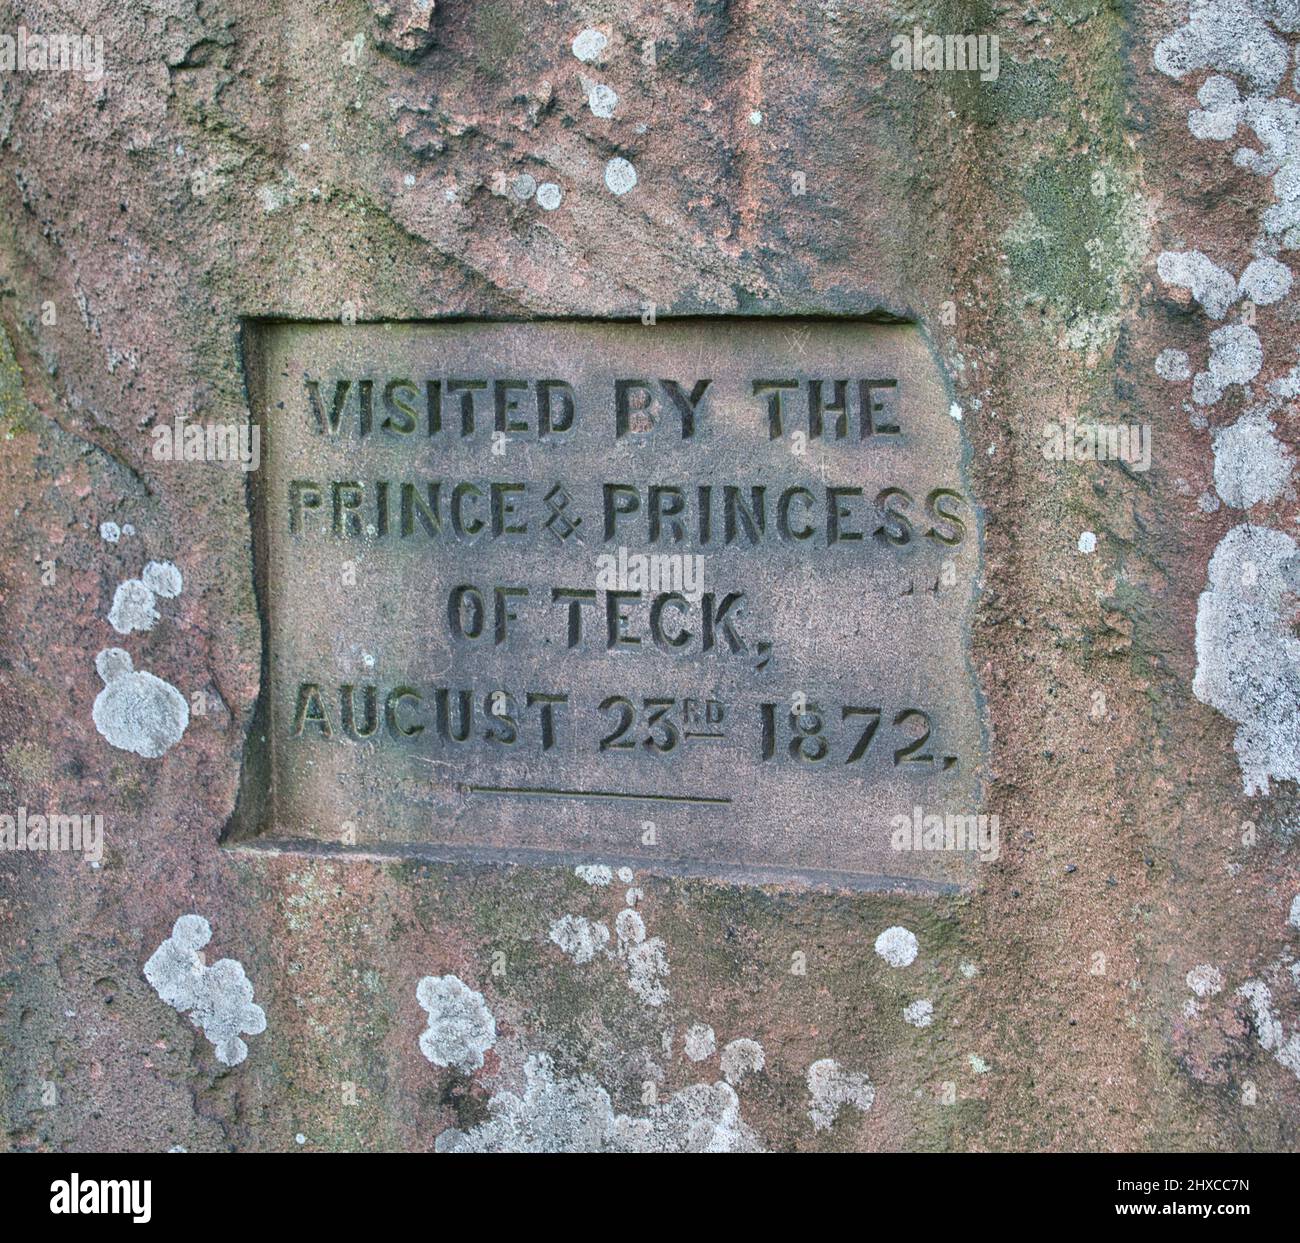 Inscripción de placa para conmemorar la visita de 1872 del Príncipe y Princesa de Teck, las cucarachas, Parque Nacional del Distrito de los Picos, Staffordshire, Inglaterra Foto de stock